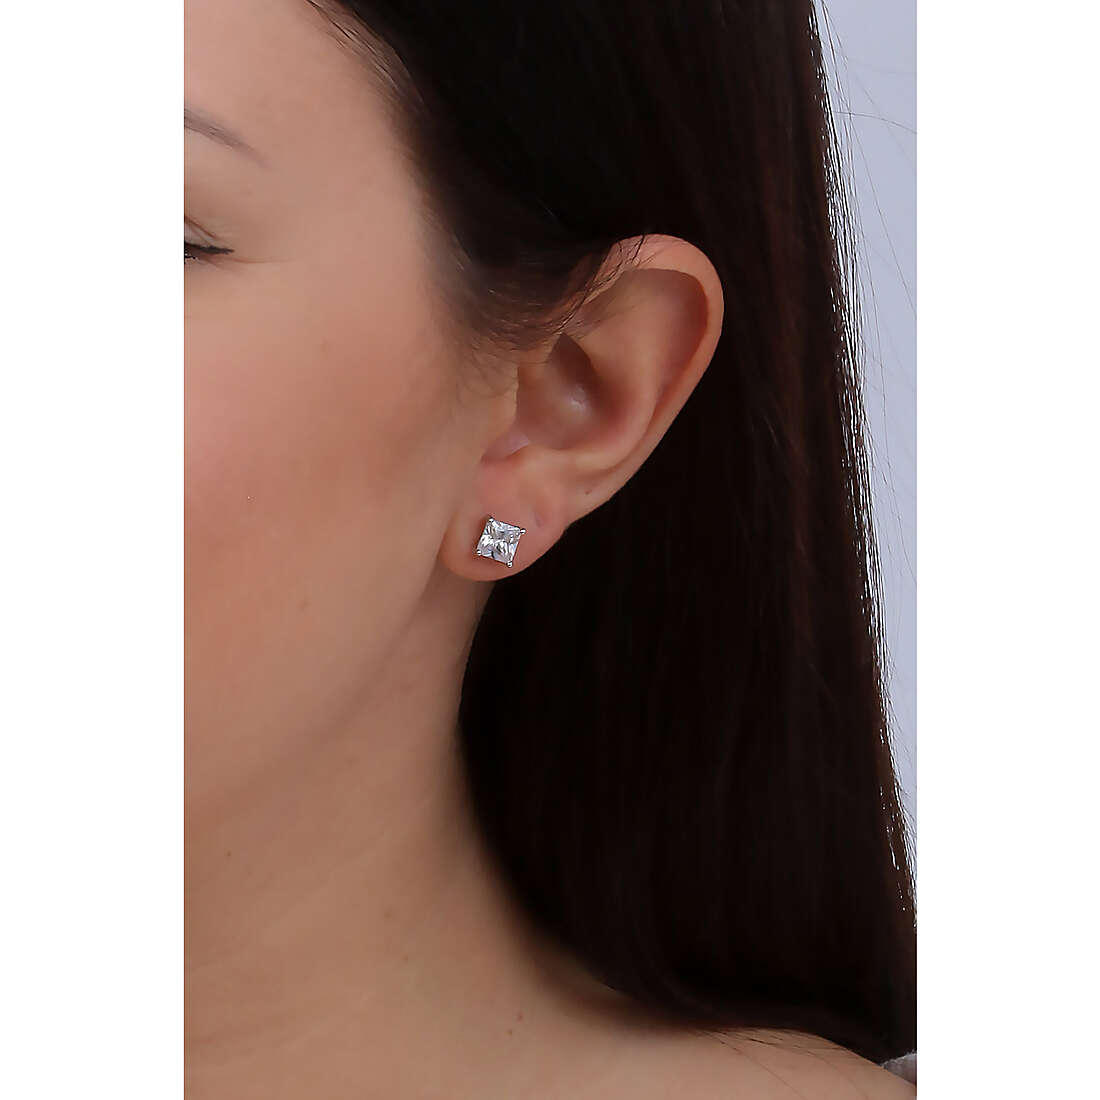 Amen earrings Diamond woman ELPQ60BB wearing